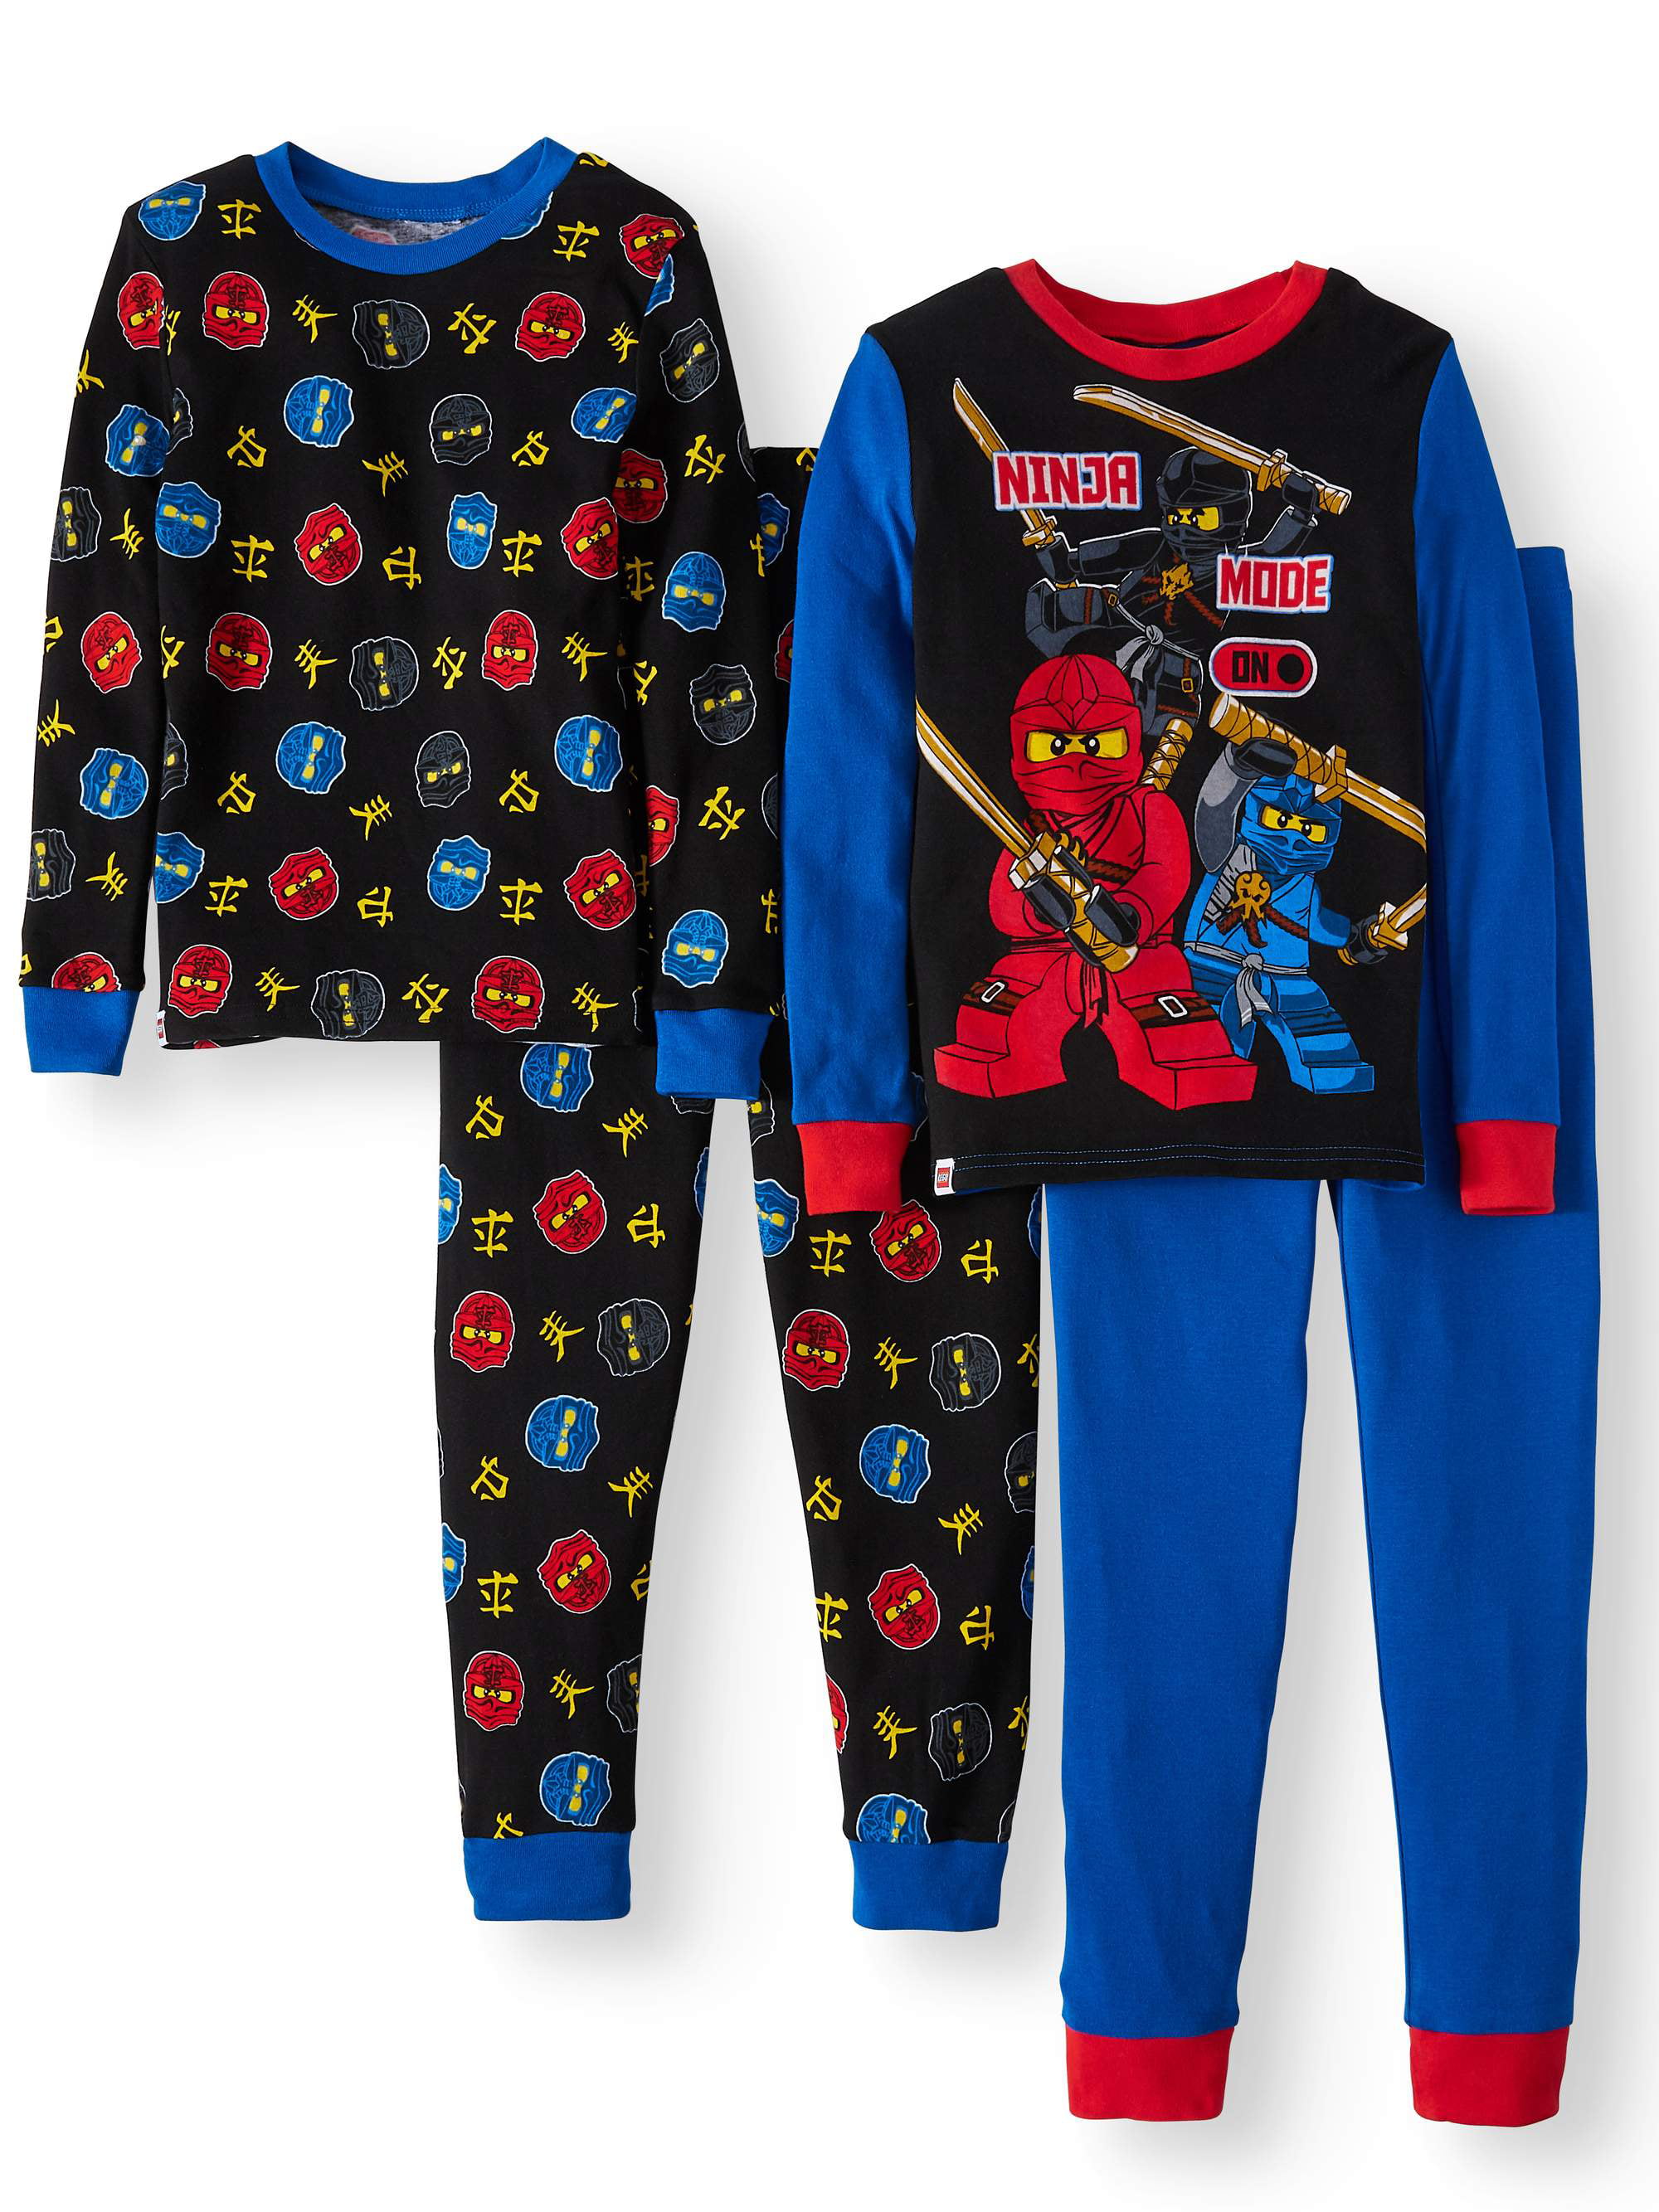 Ninja Boys Pajamas